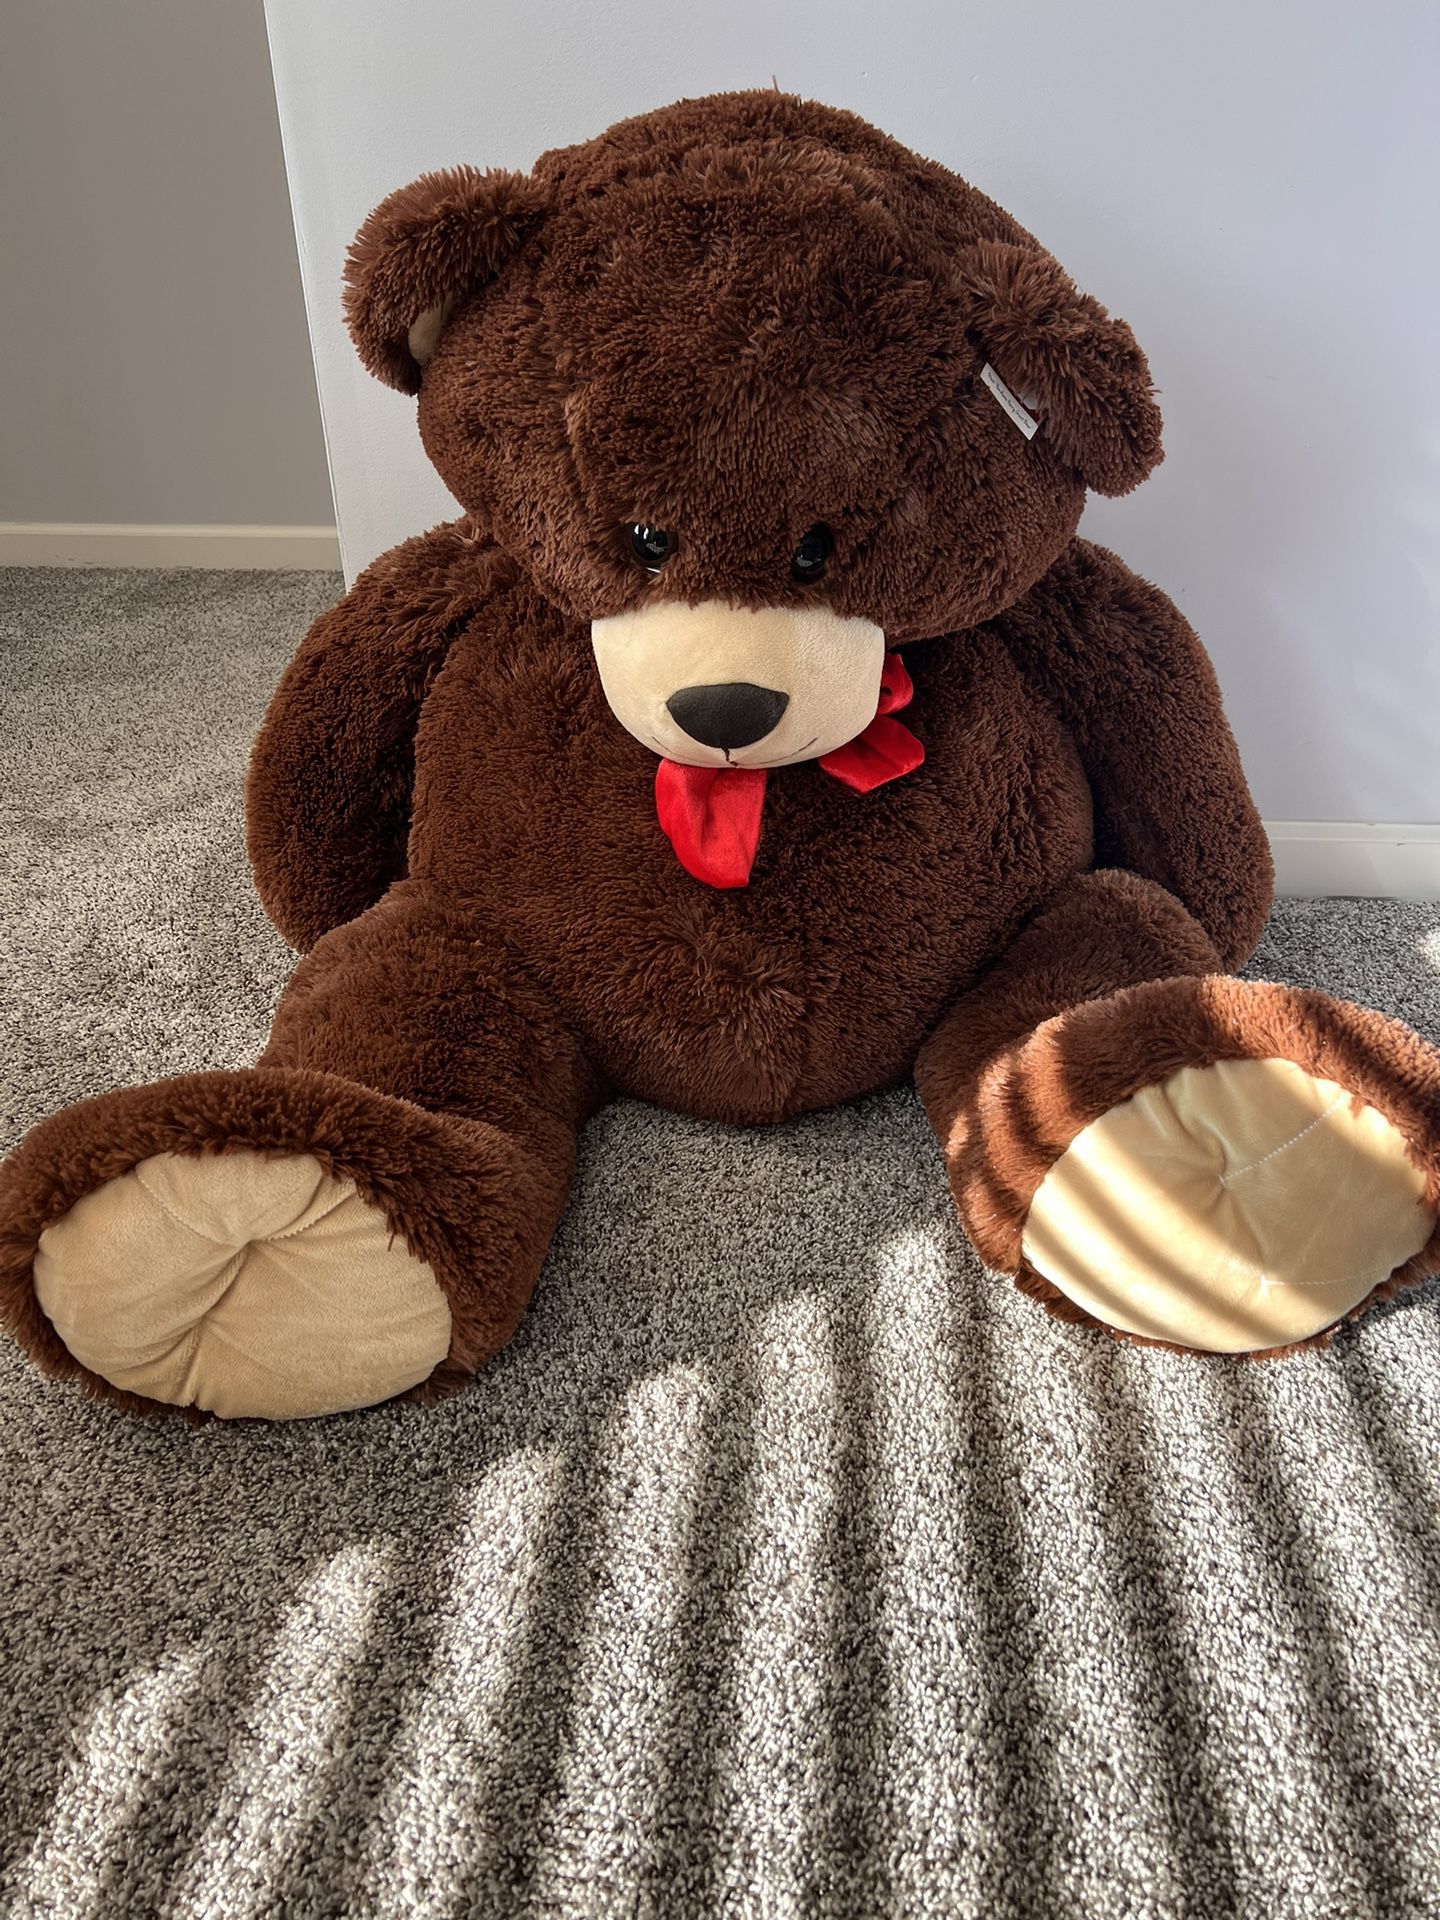 Giant Plush Teddy Bear